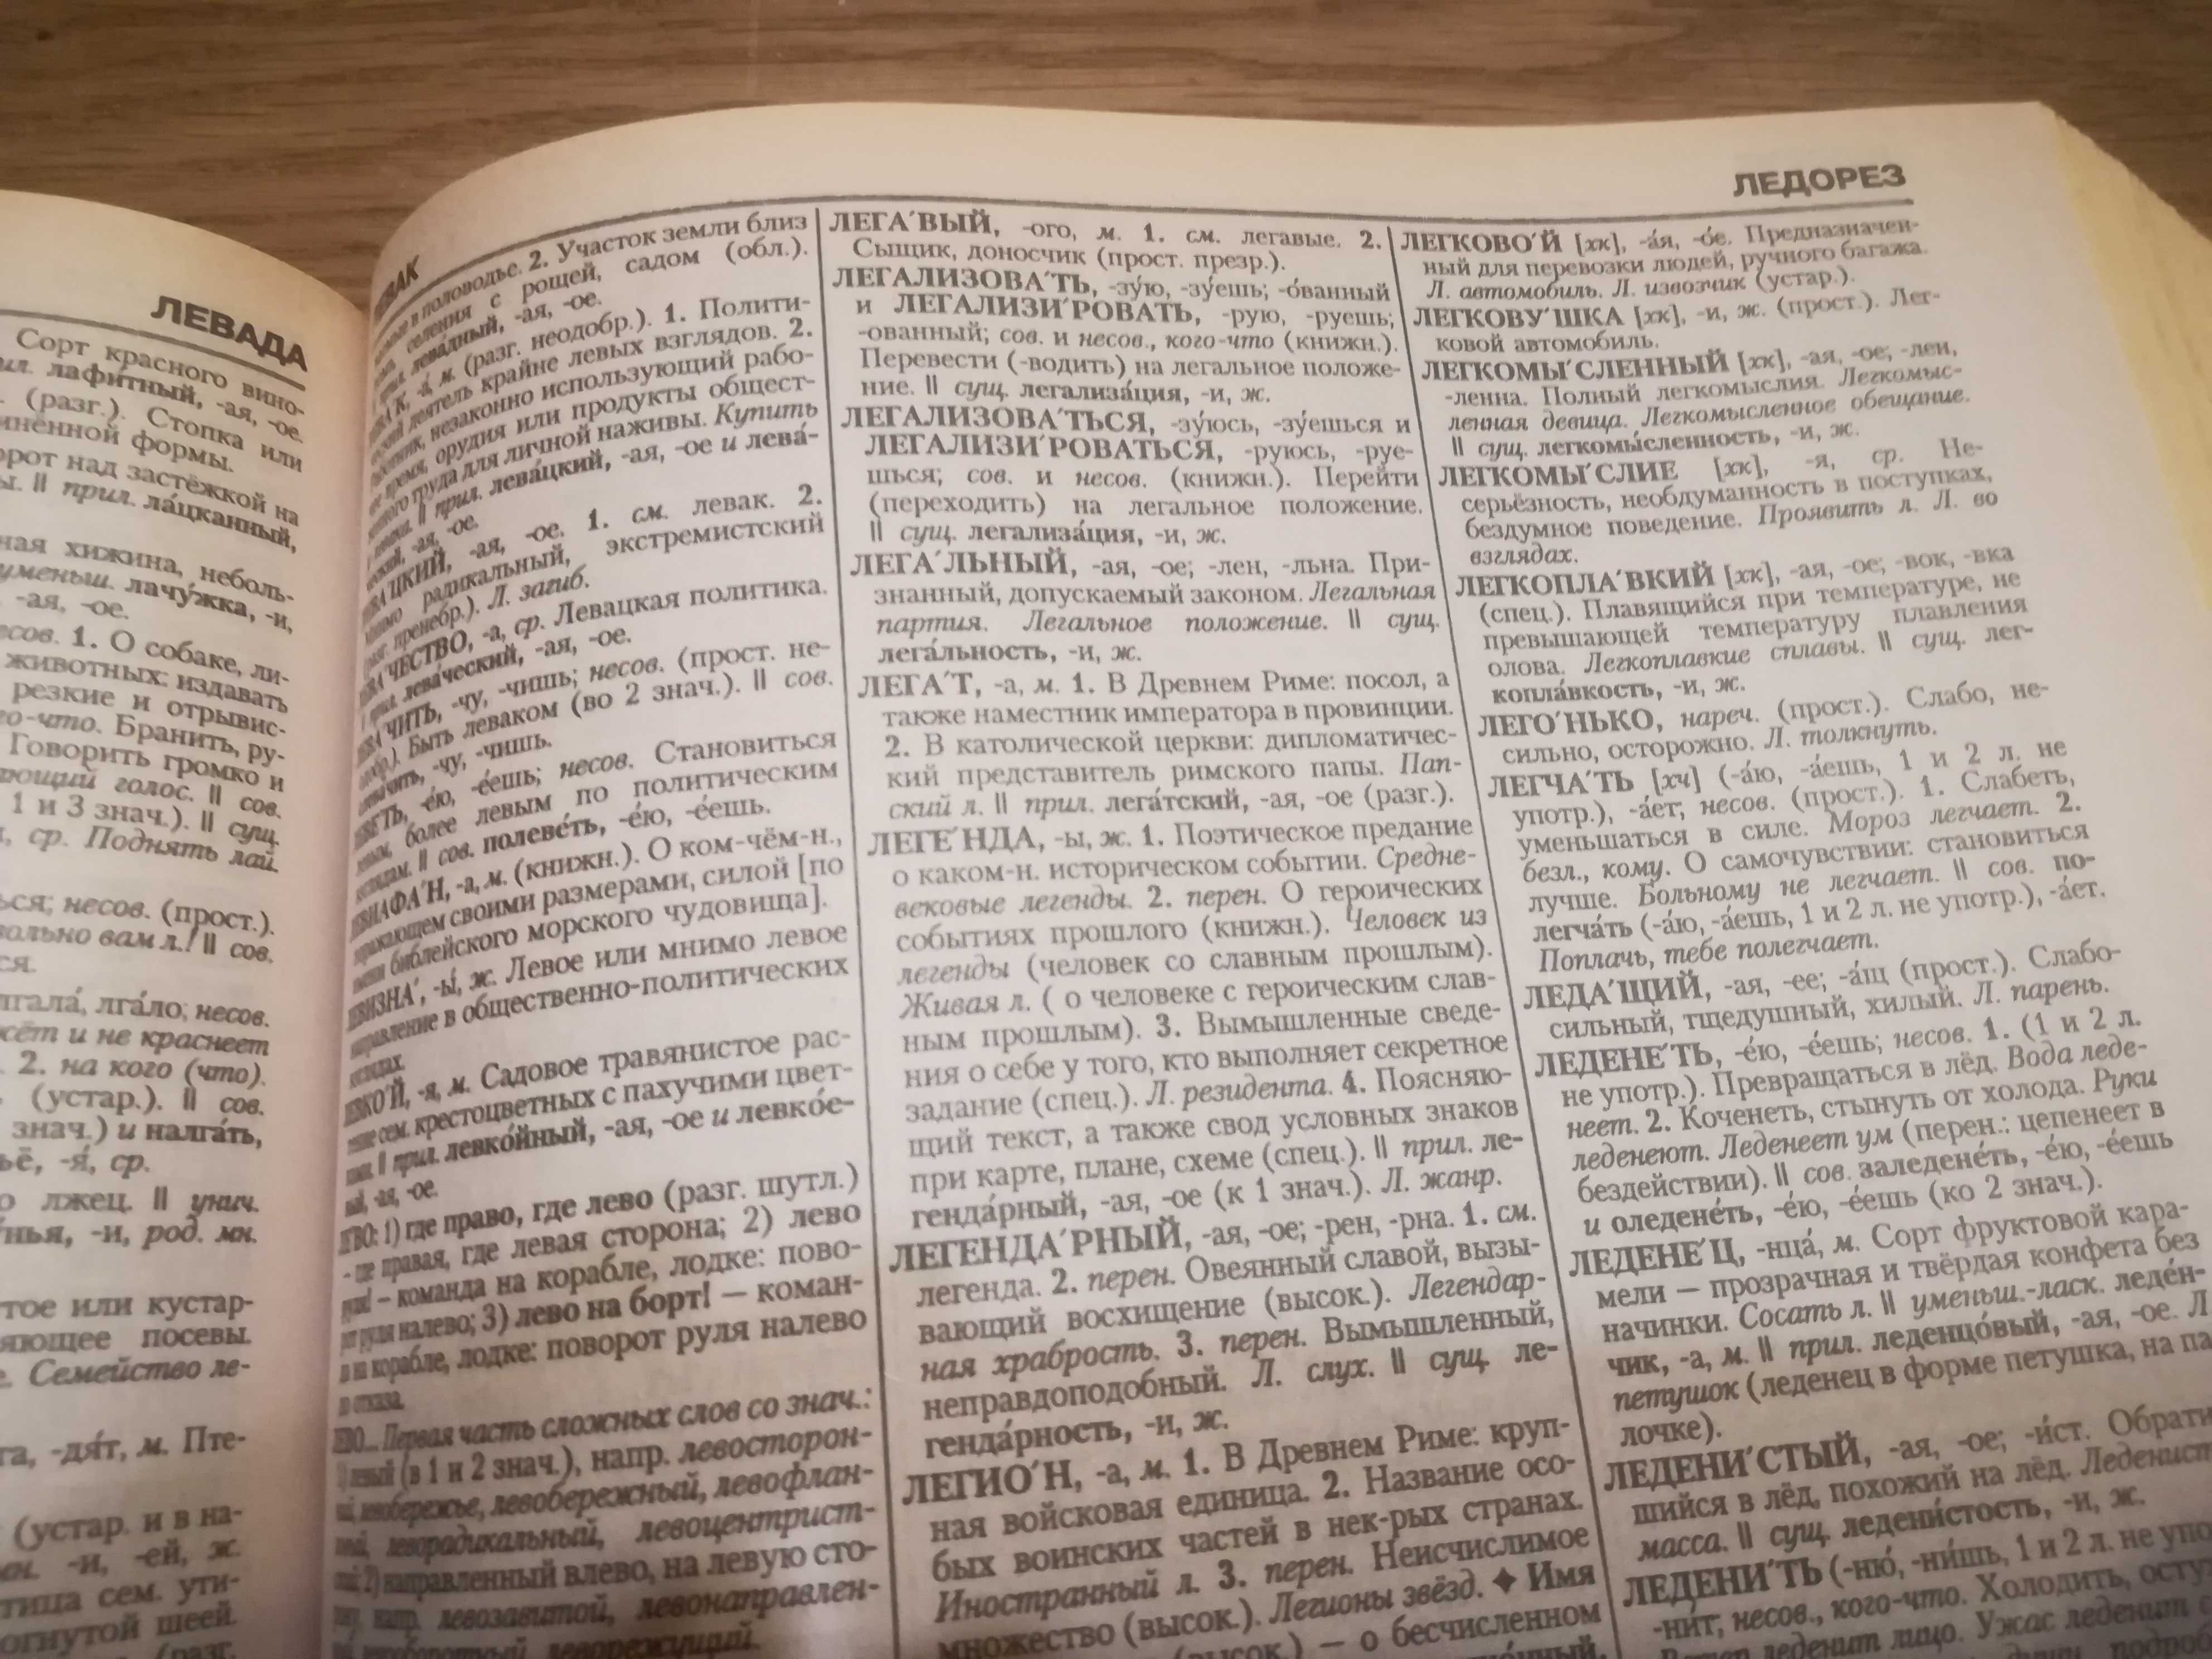 Wielki słownik języka rosyjskiego Ożegowa